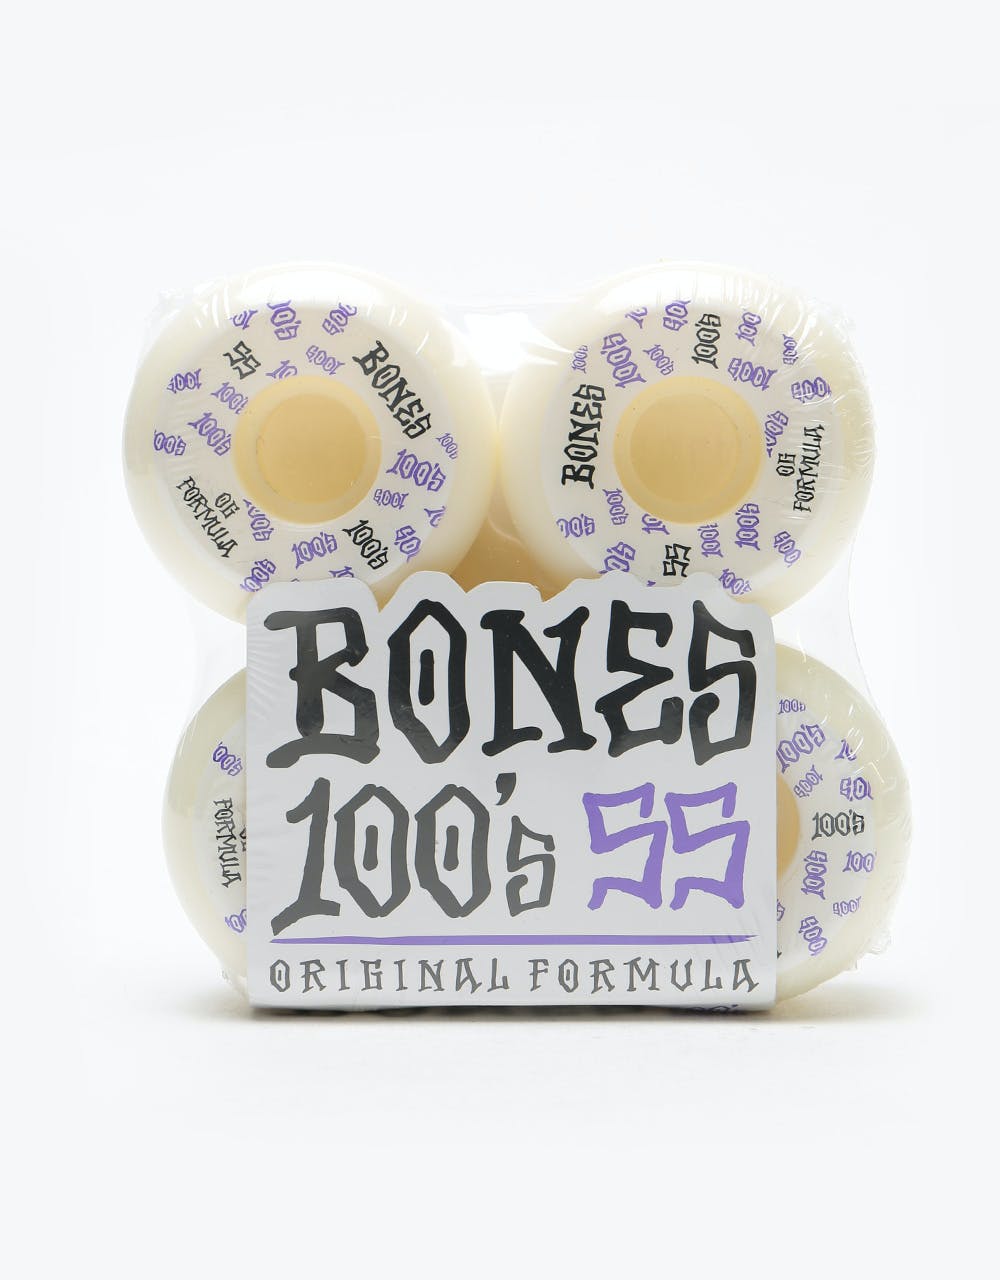 Bones OG 100s #3 V5 Skateboard Wheel - 55mm